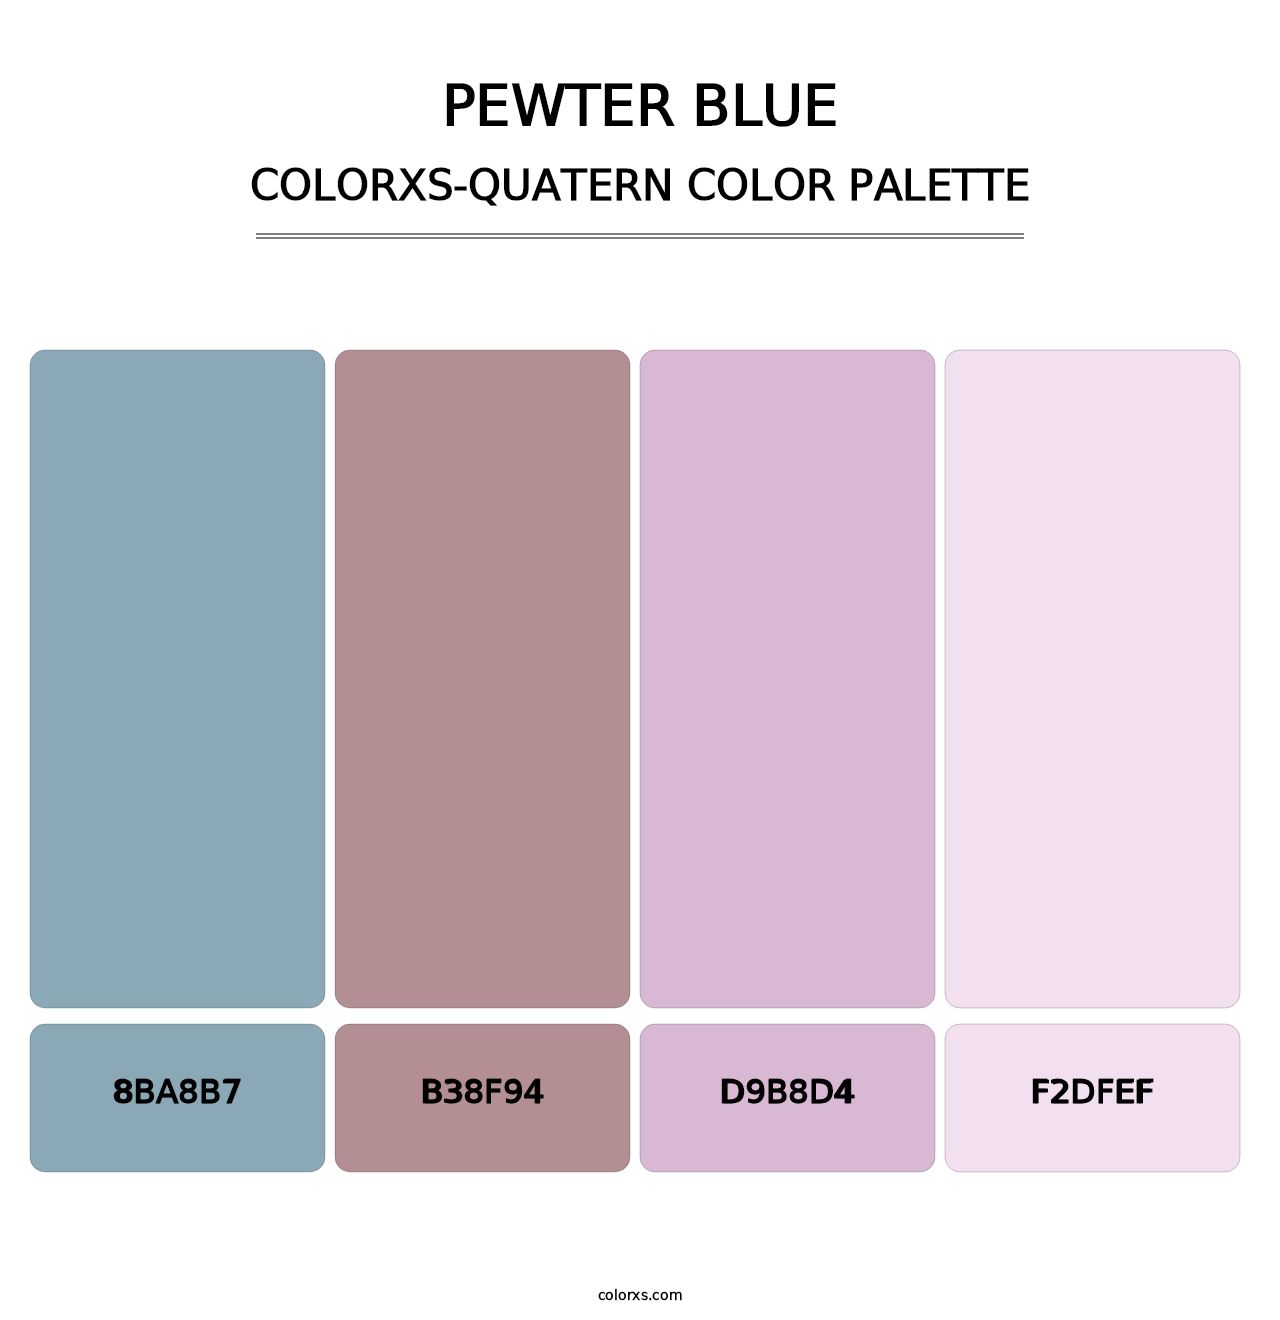 Pewter Blue - Colorxs Quatern Palette